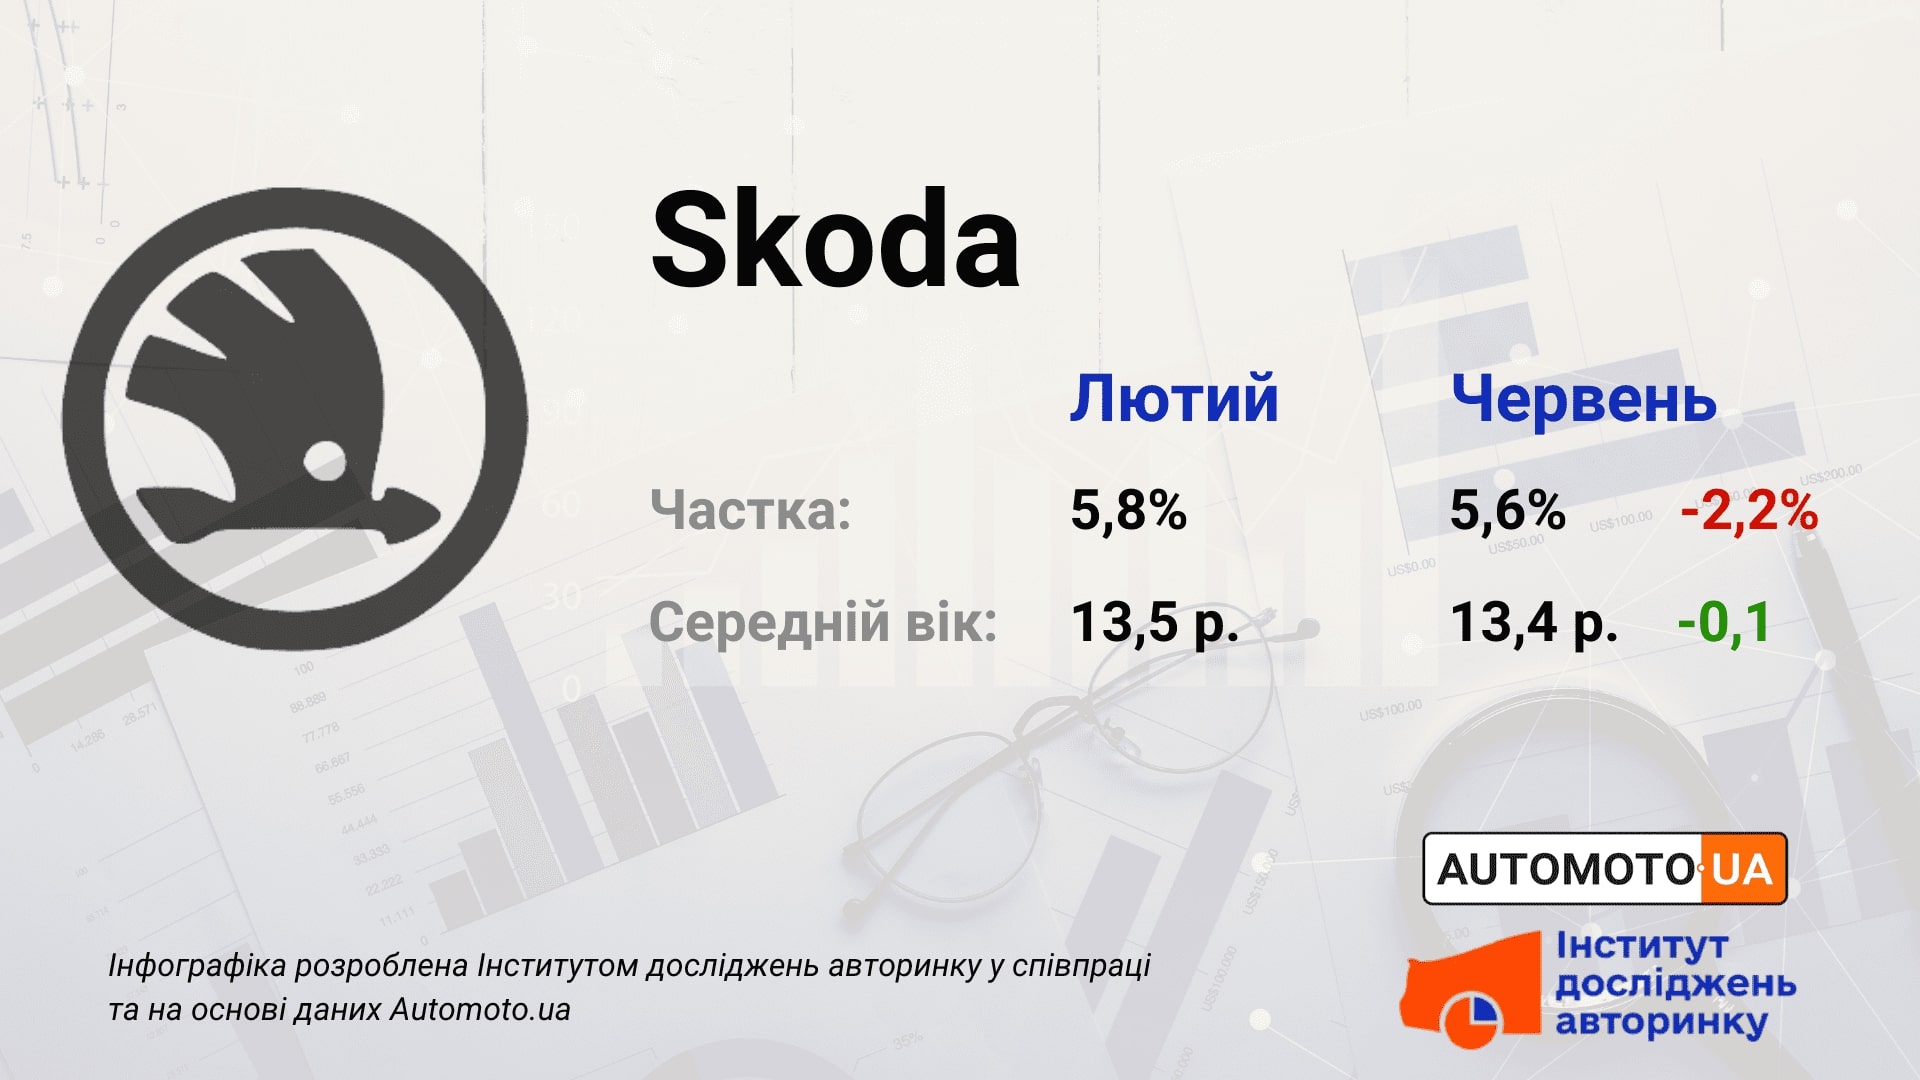 Сколько автомобилей марки Шкода на украинском автобазаре